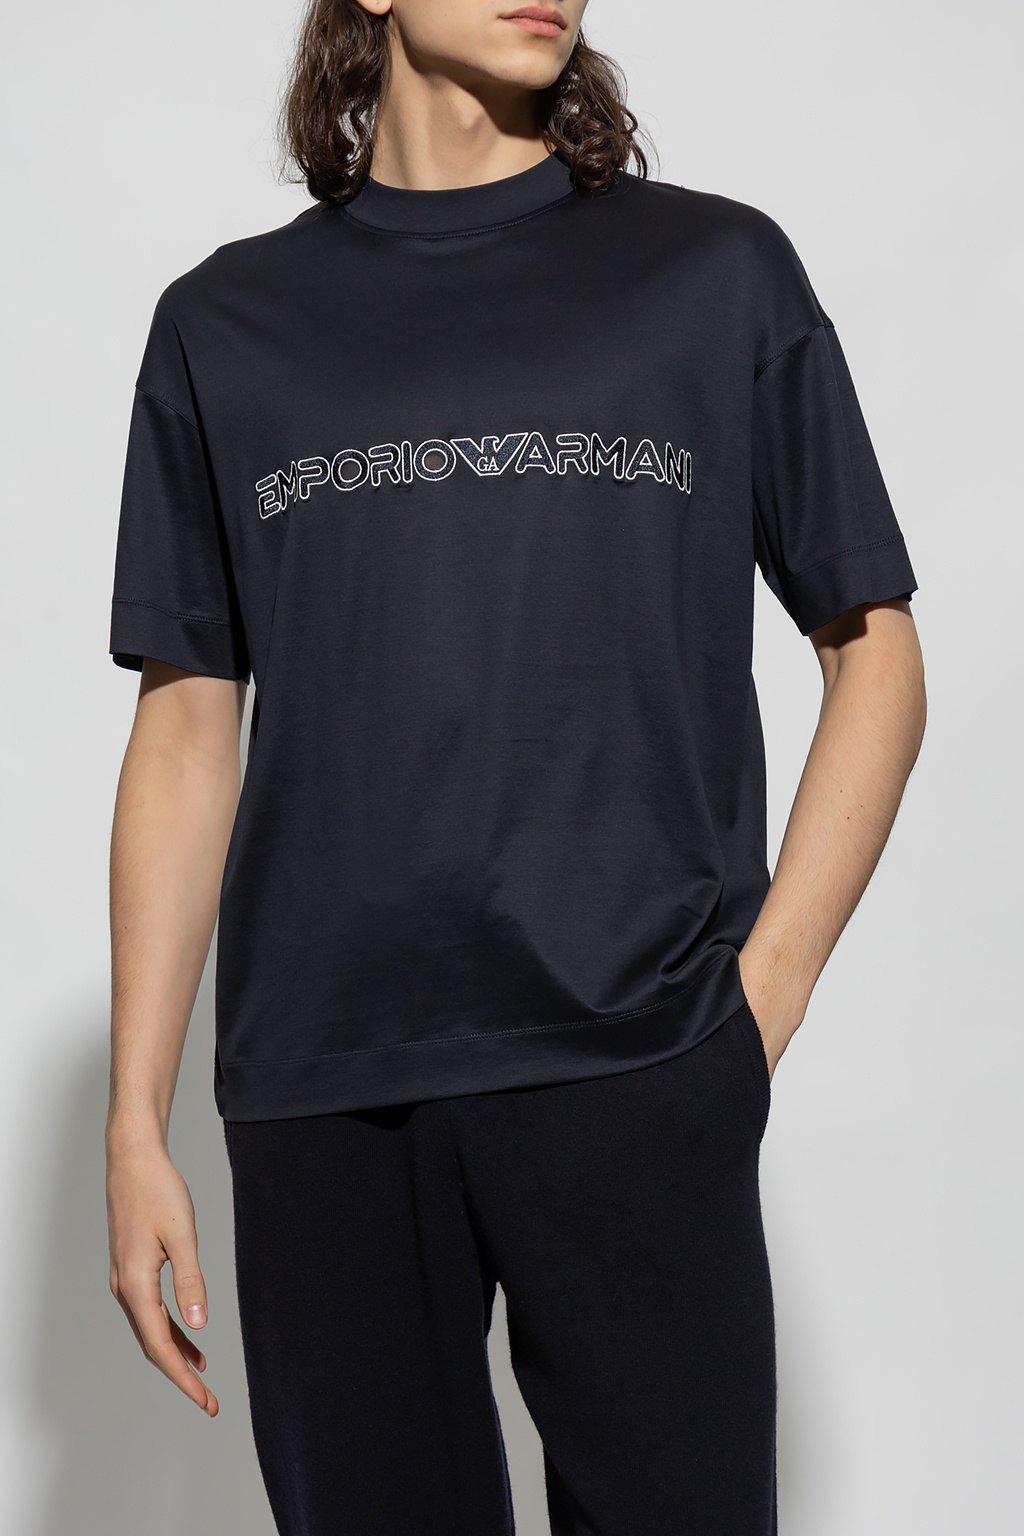 Emporio armani chinos Giorgio armani chinos diamond-jacquard knitted T-shirt